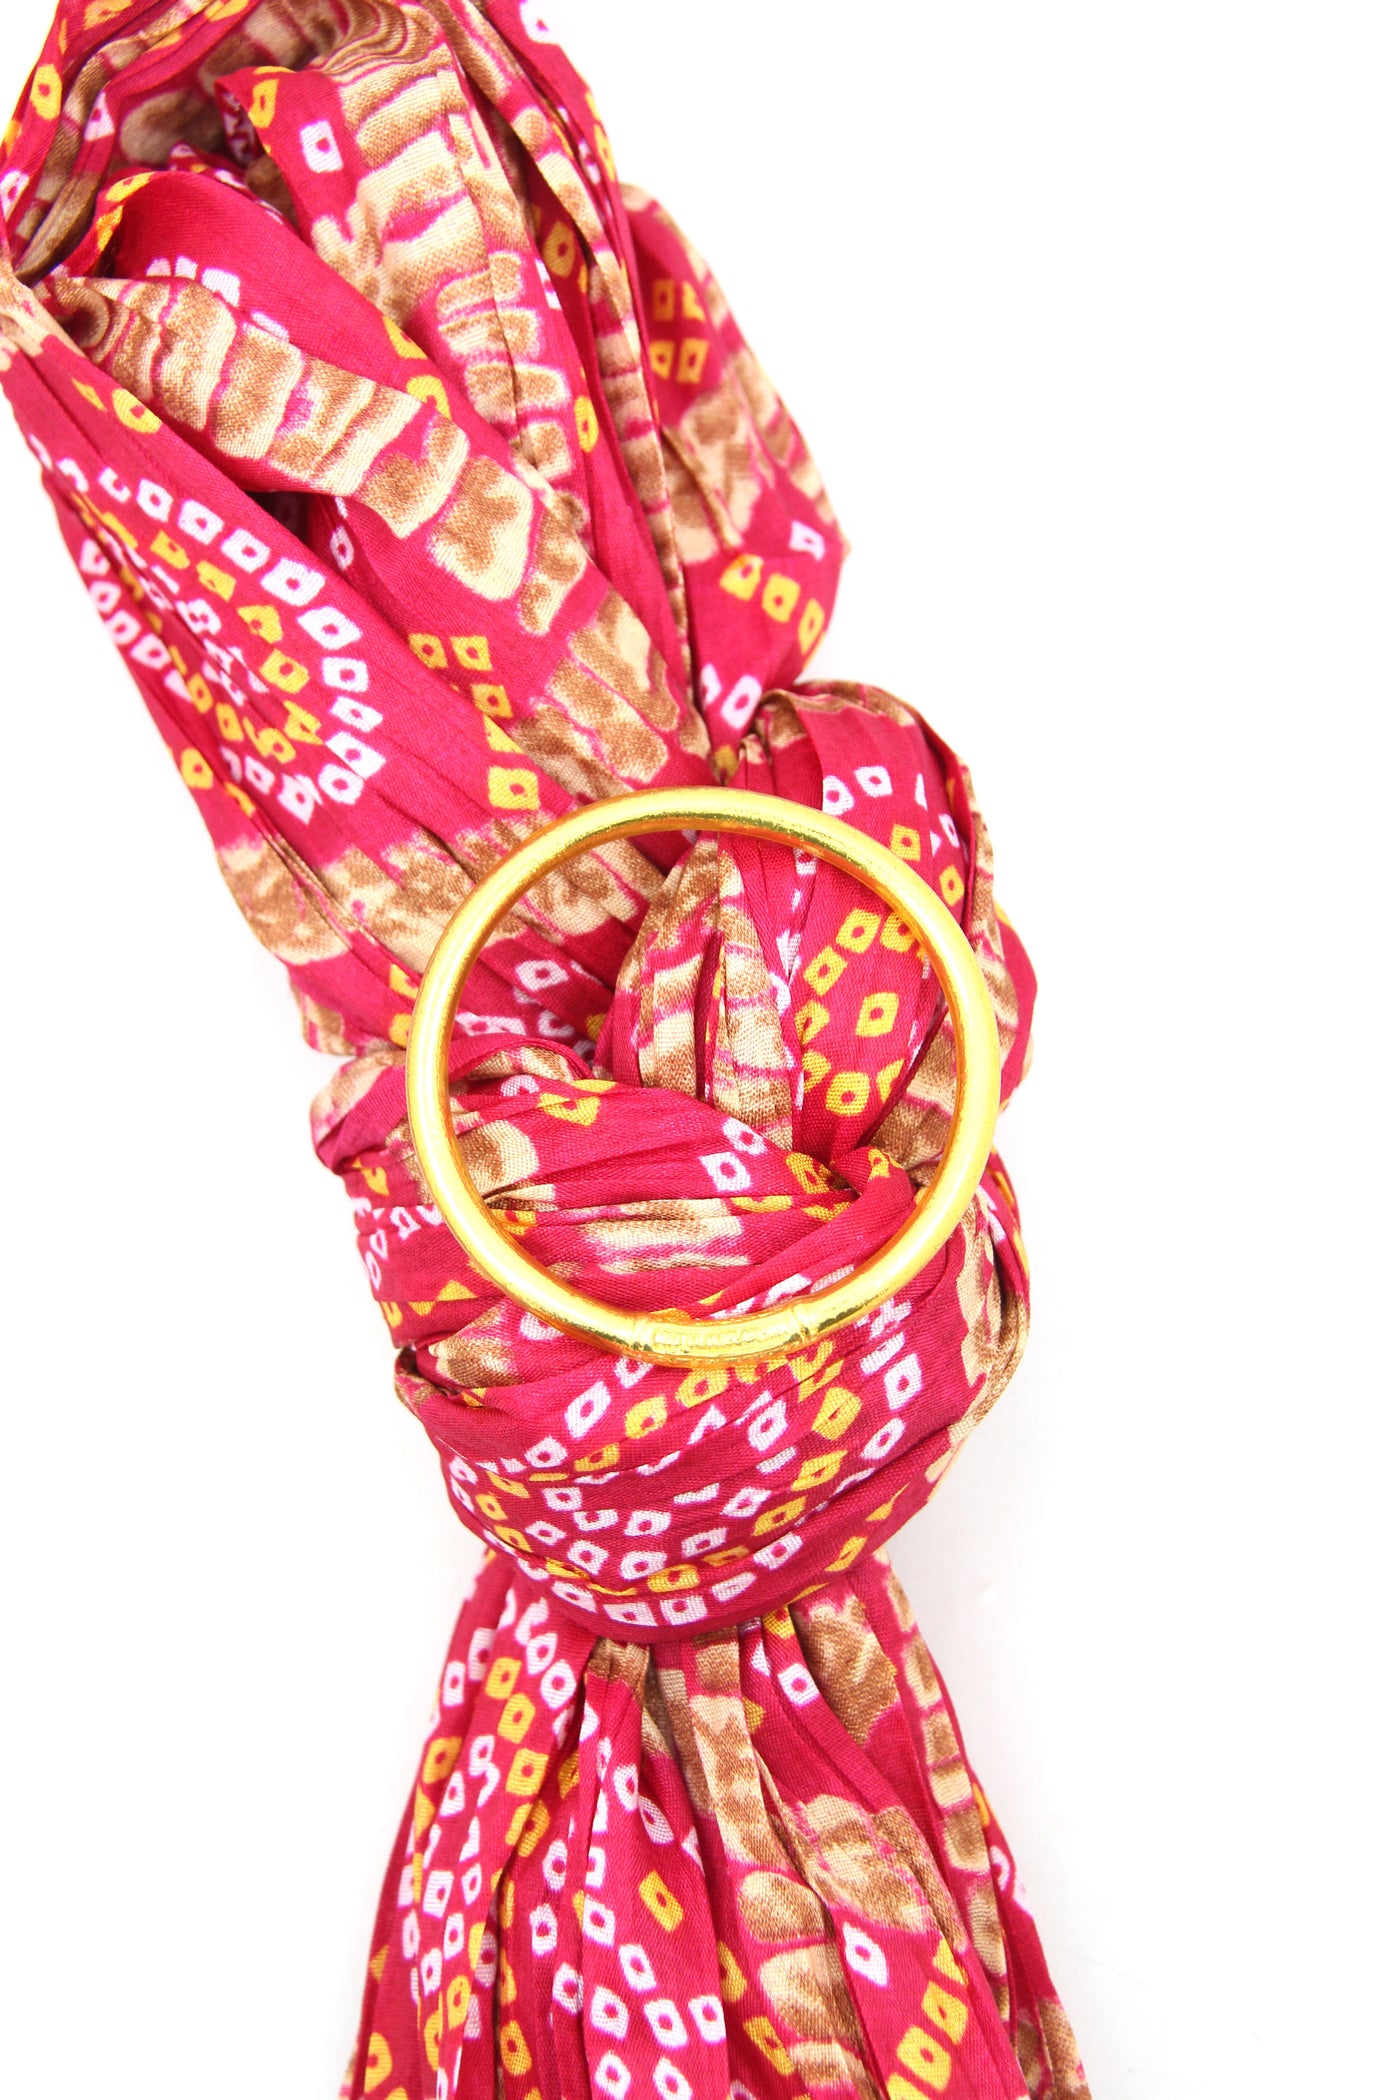 Traveler Gift Set: Pink Rose Indian Scarf, Gold Thai Buddhist Bangle